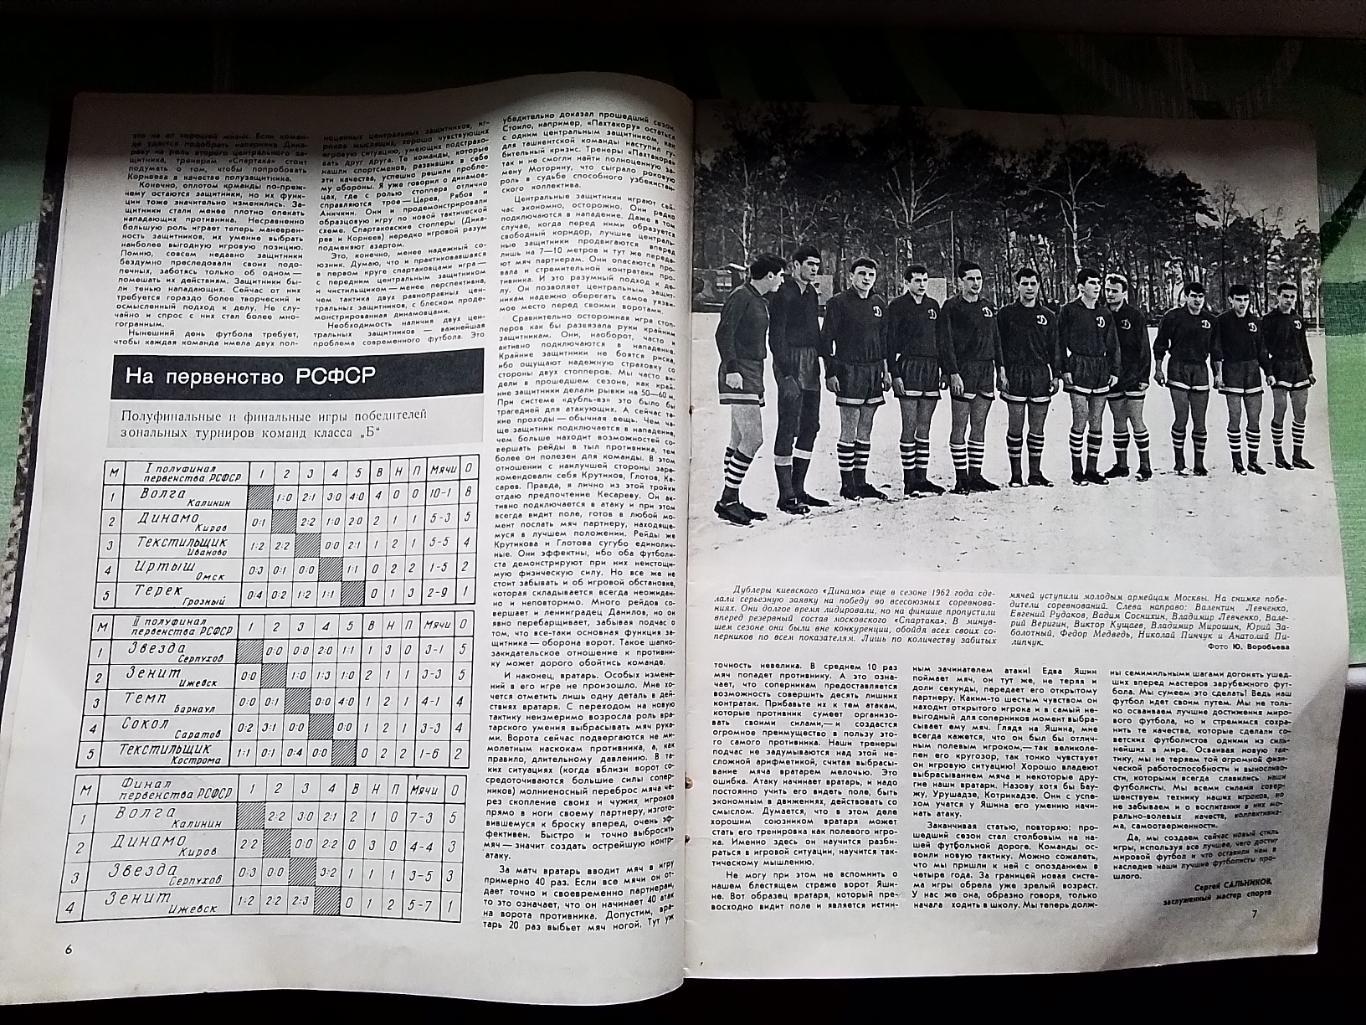 Журнал Спортивные игры 1964 N 1 Таблицы шахматки класса Б и чемпа по гандболу 2